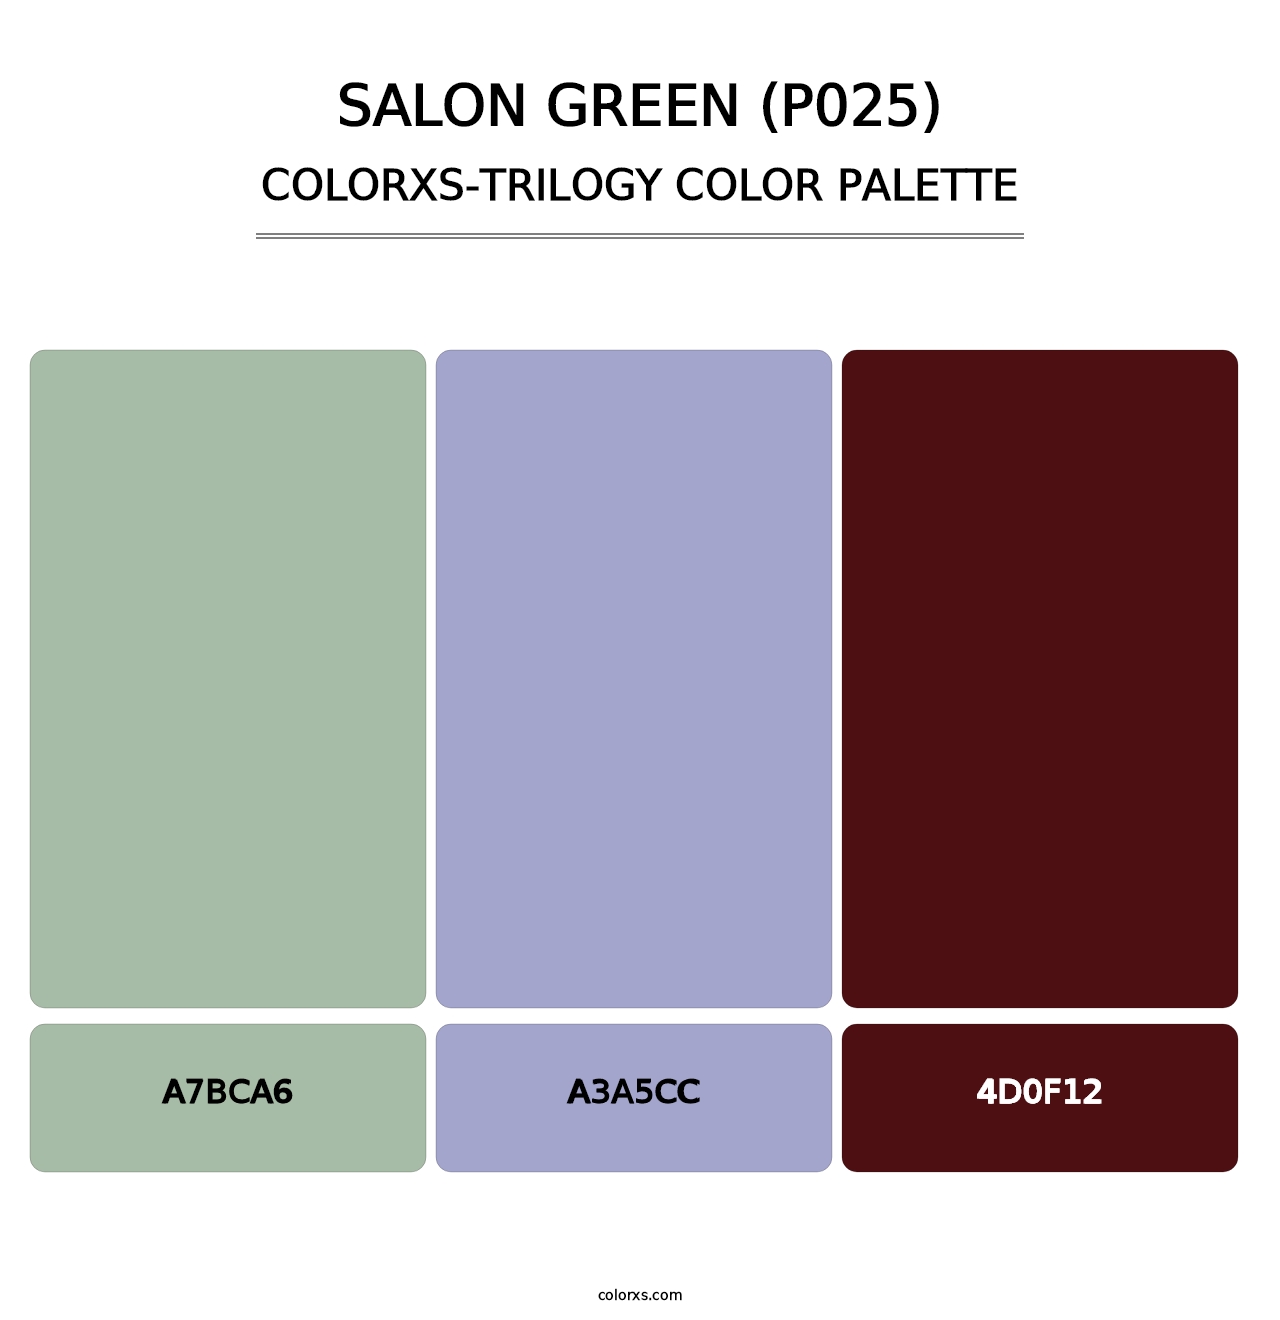 Salon Green (P025) - Colorxs Trilogy Palette